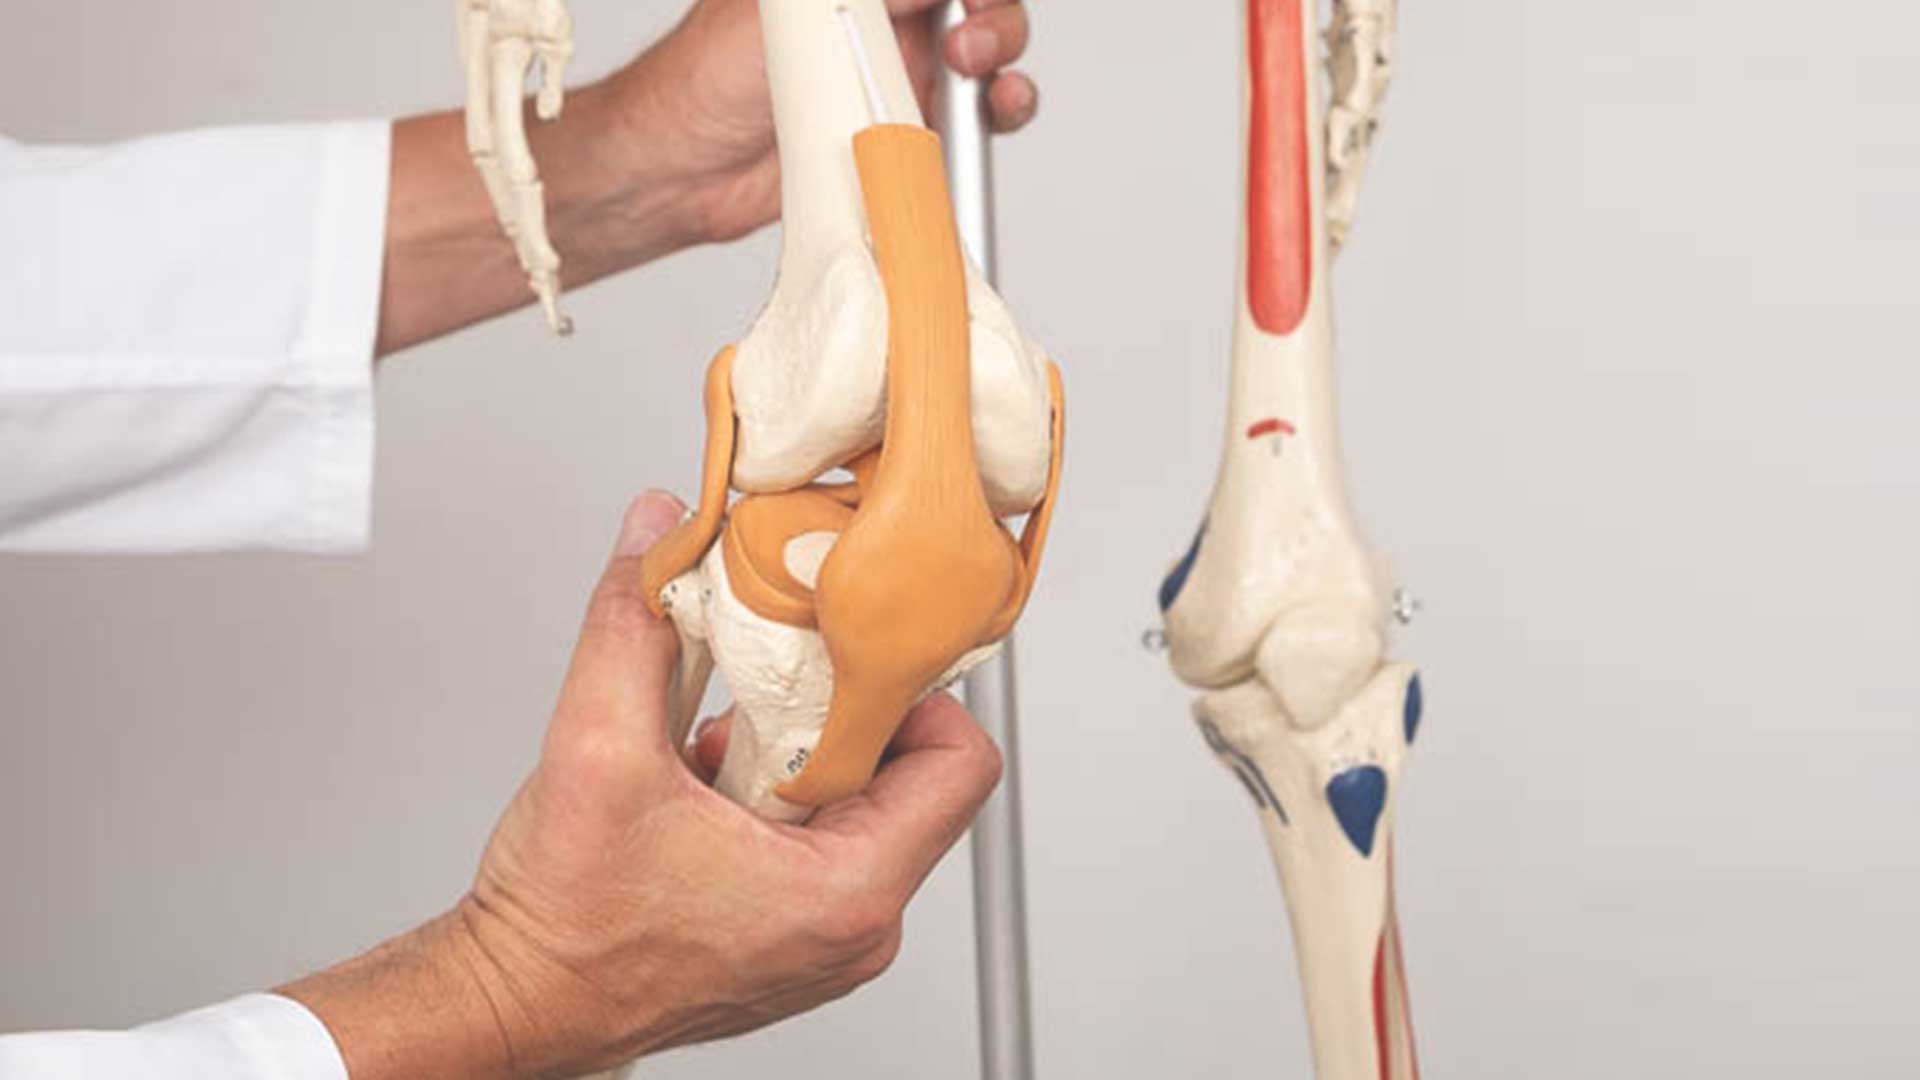 liječenje osteoartritisa konzultacija sredstva za ublažavanje bolova u zglobu koljena